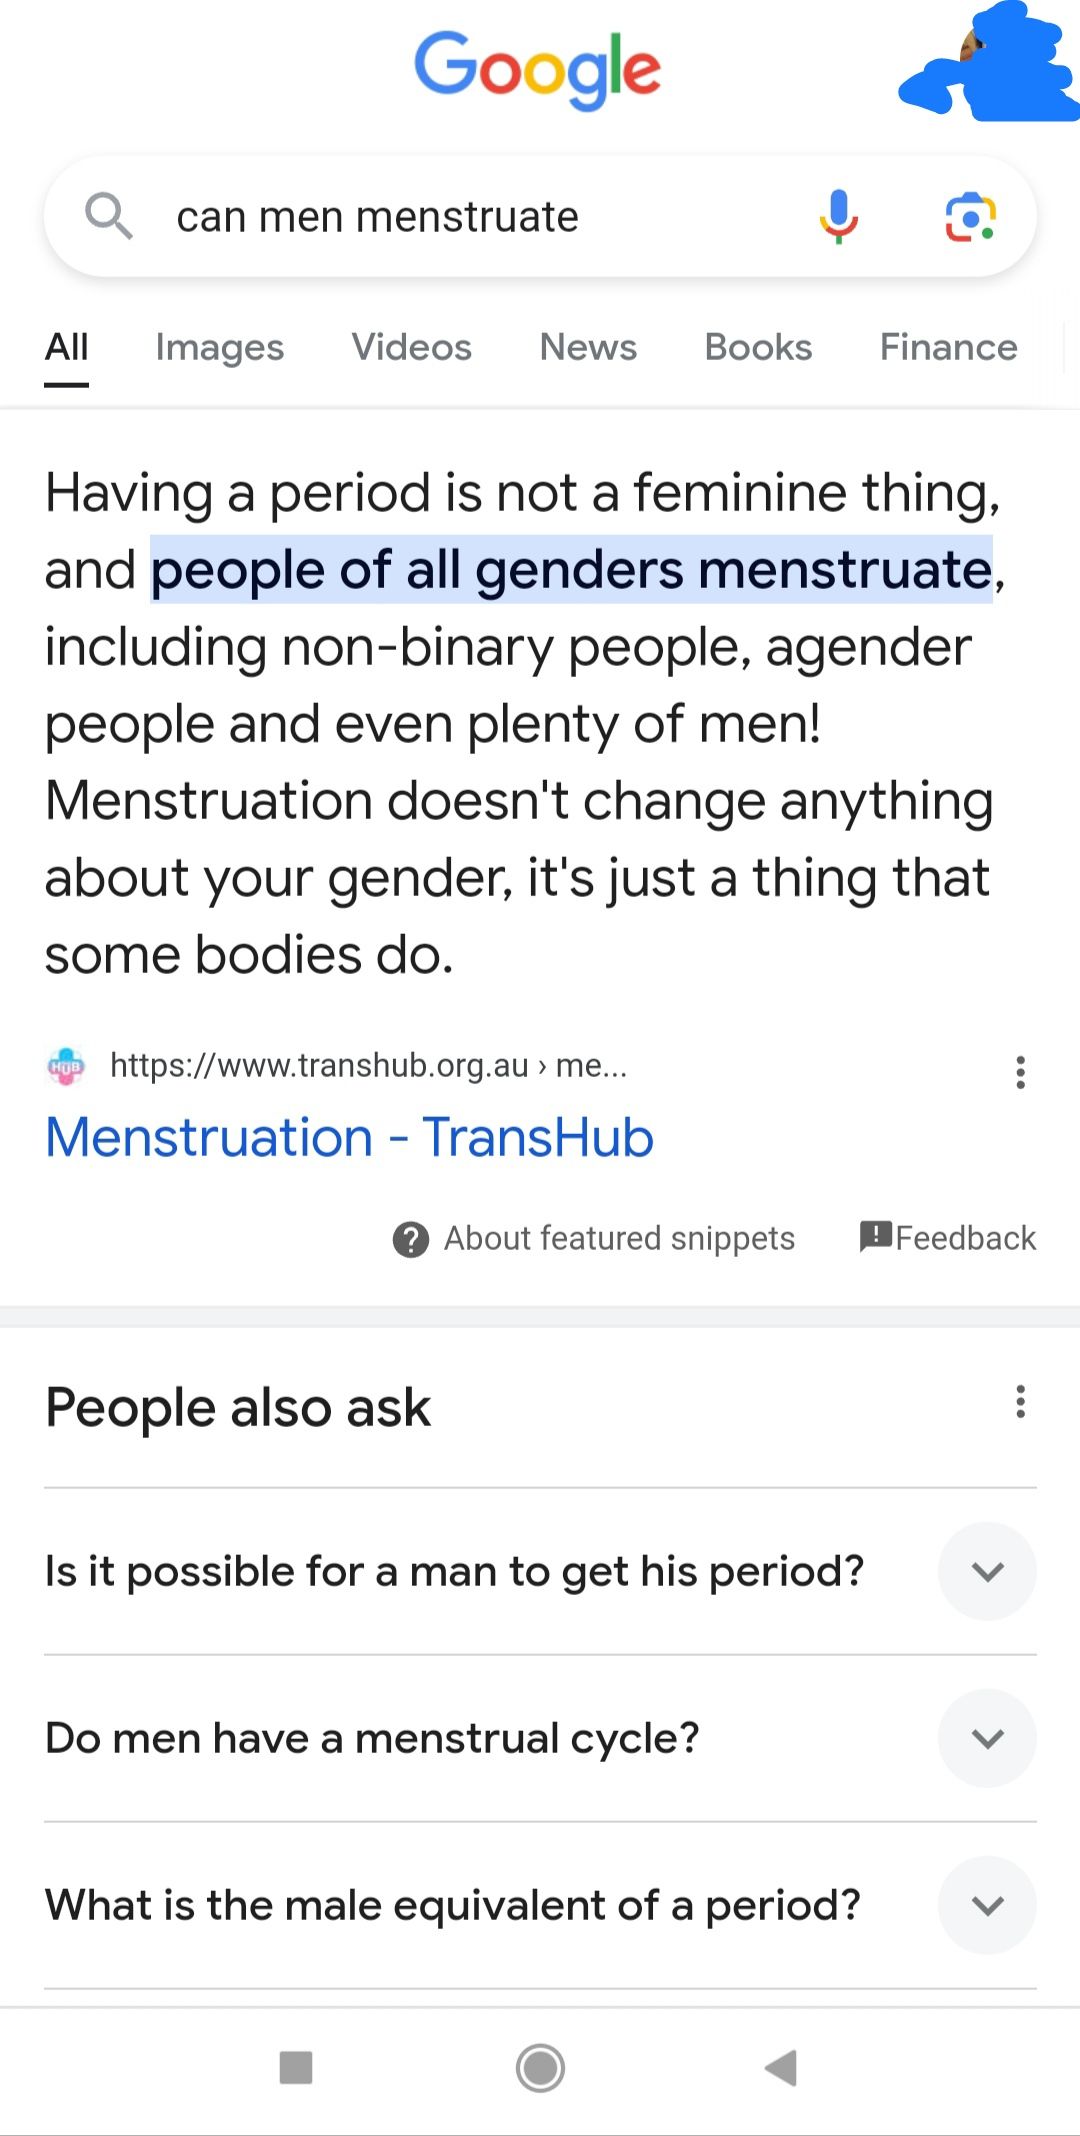 Google szerint a férfiak képesek menstruálni